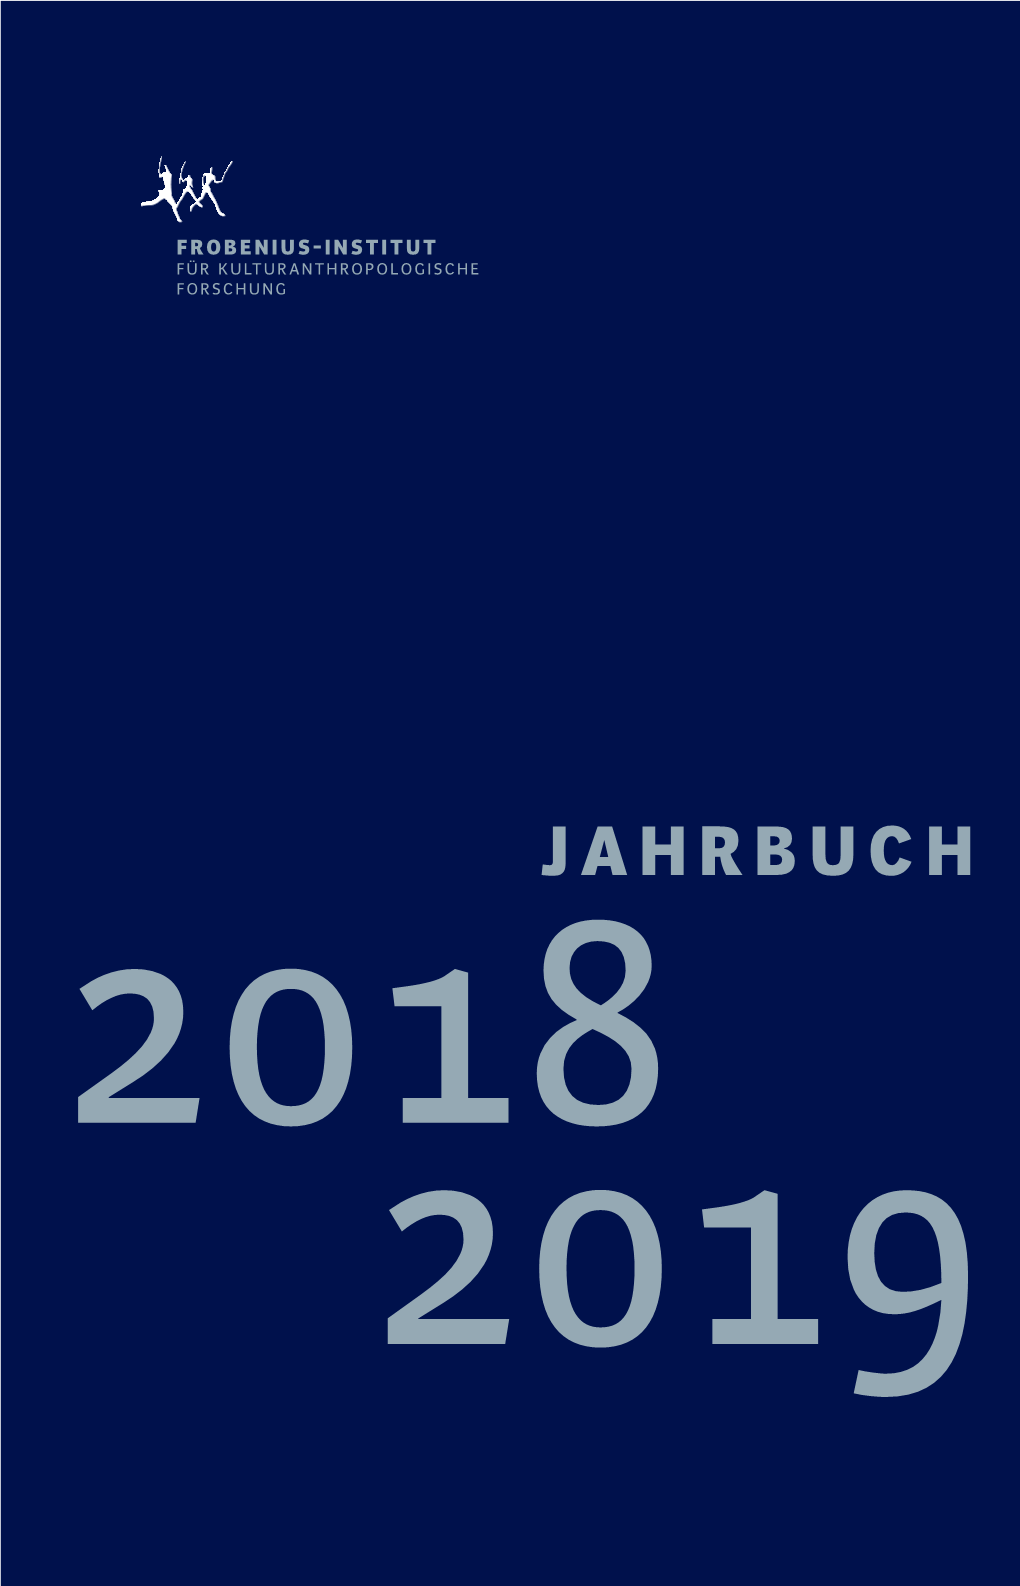 Frob Jahrbuch2019 11Korr.Indd